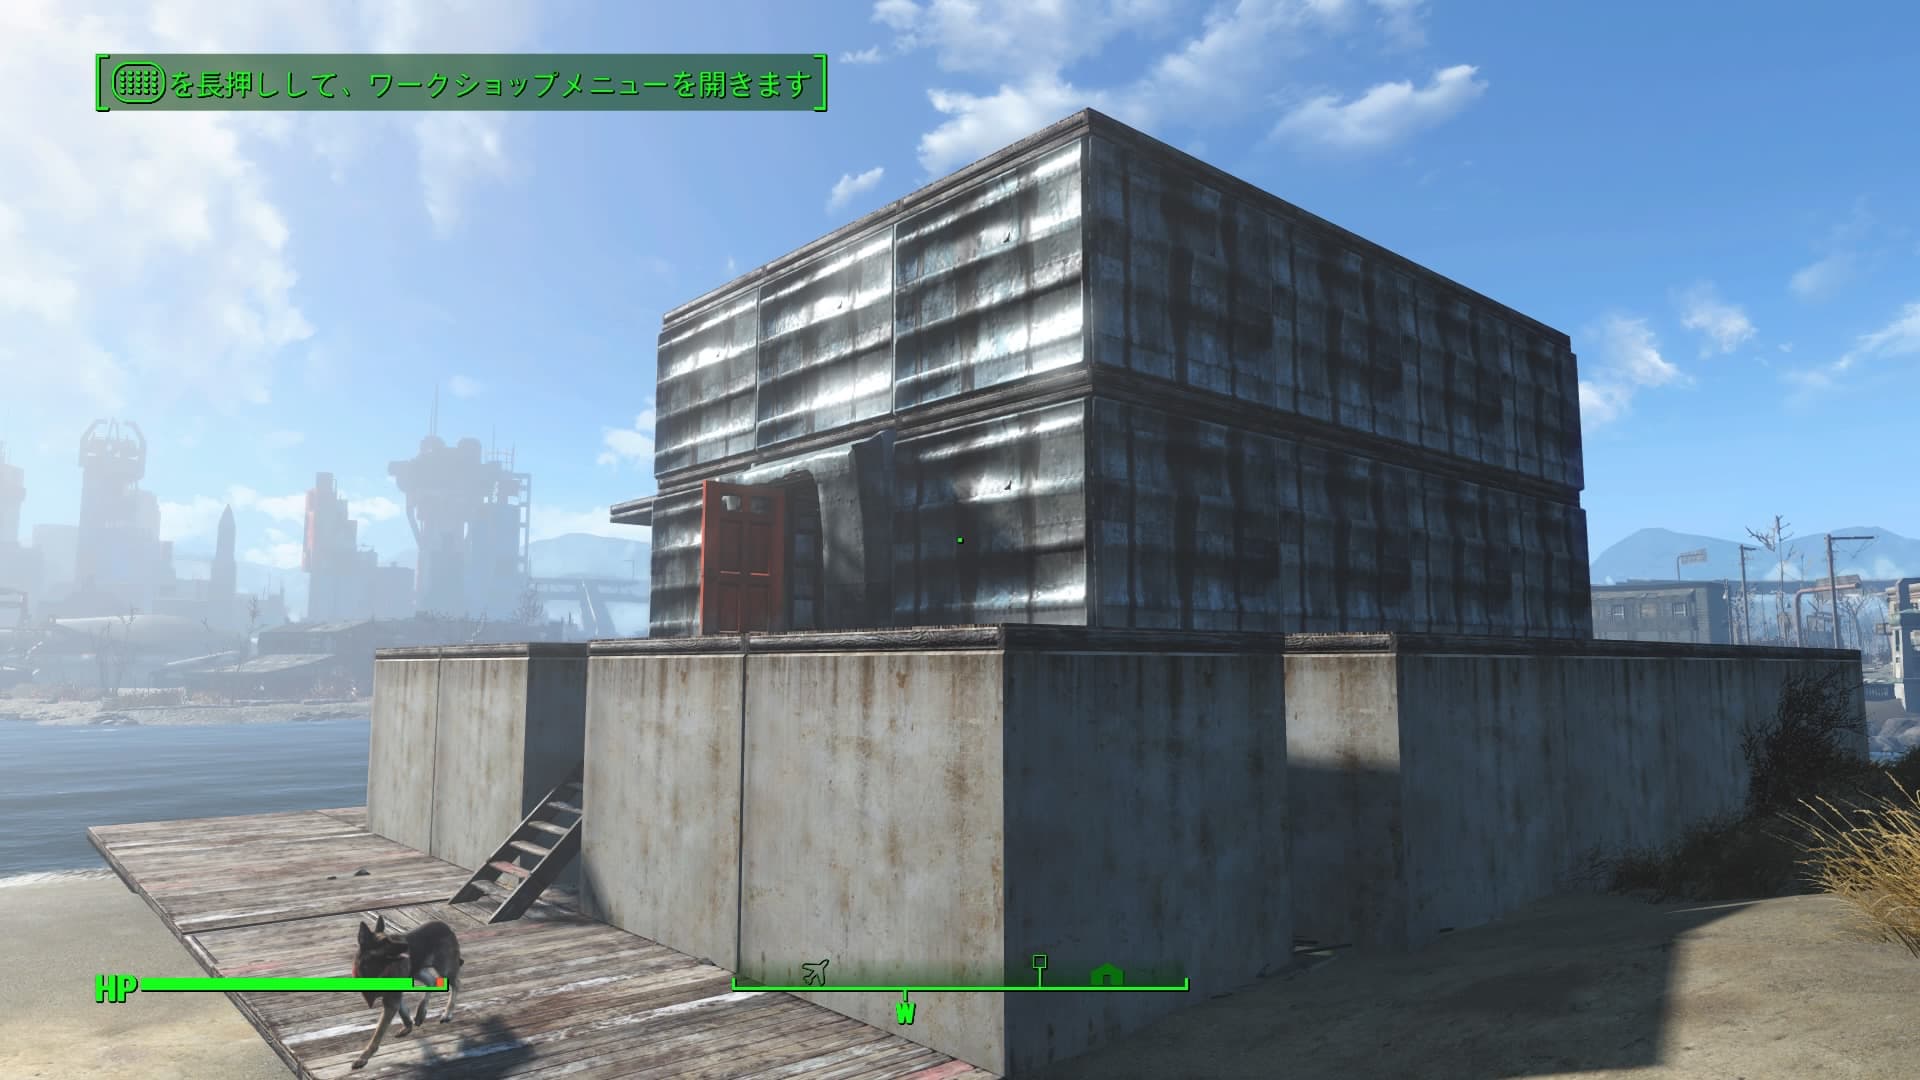 Fallout4 クラフト メインの家を作る 二階建てベランダ屋上付きの家を建てました 拠点が充実してきましたよ あまげー